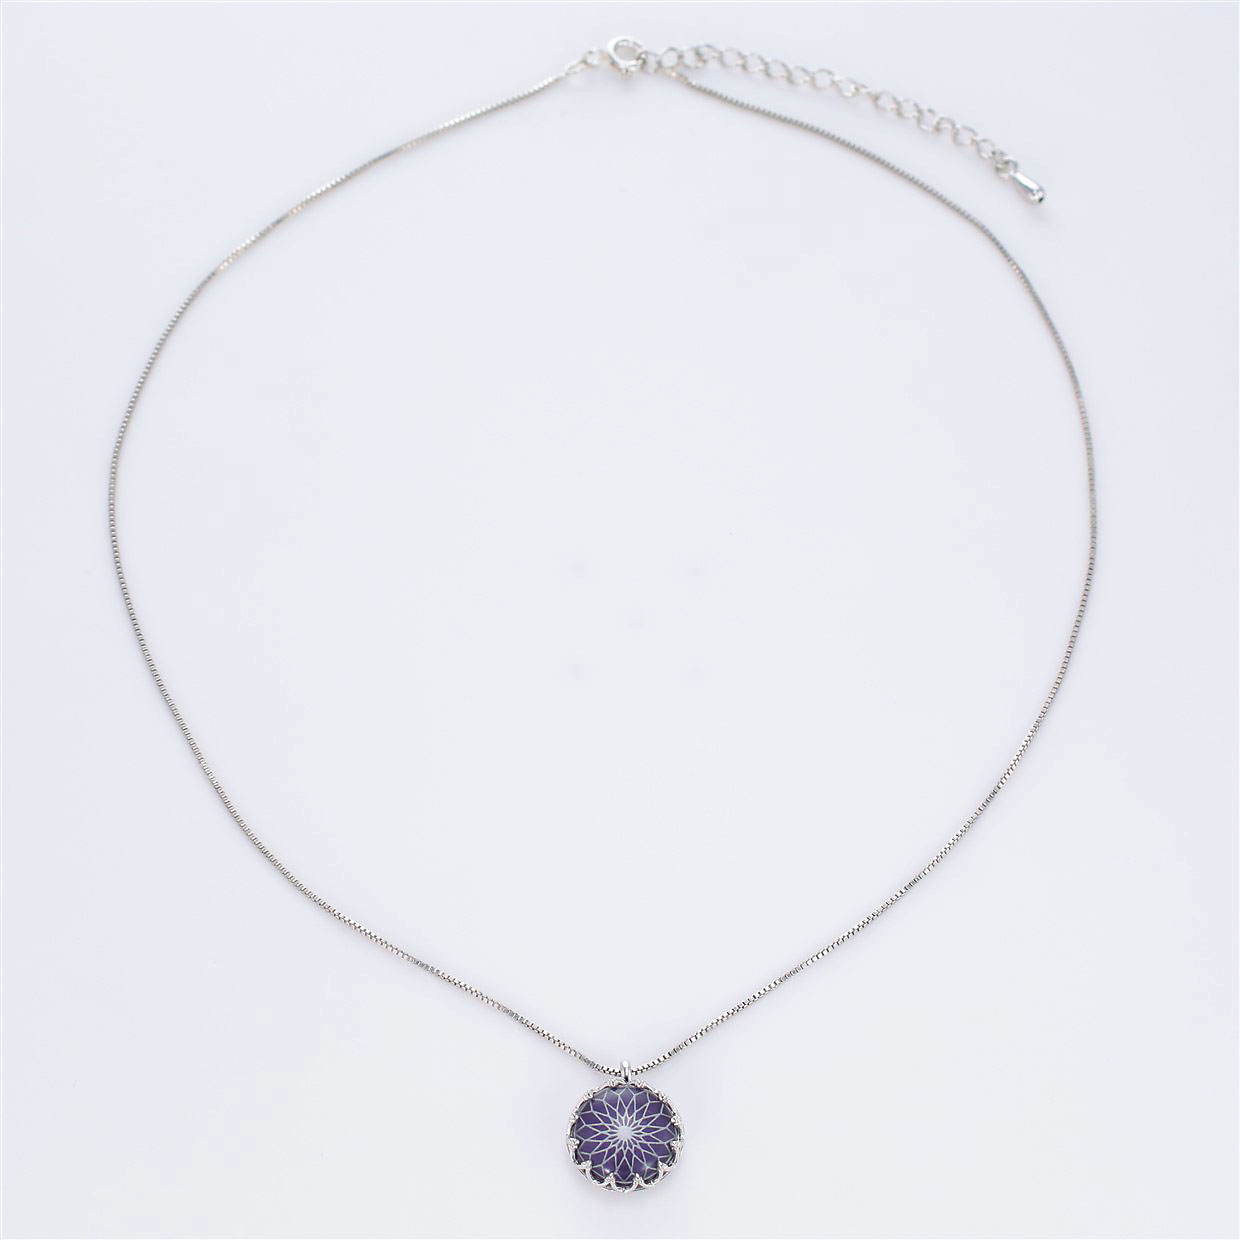 宝石クォーツ・水晶を使った和風のデザインが特徴的な和の彩ネックレス/ペンダントの商品写真です。型番：CR201019-01~05 画像その1